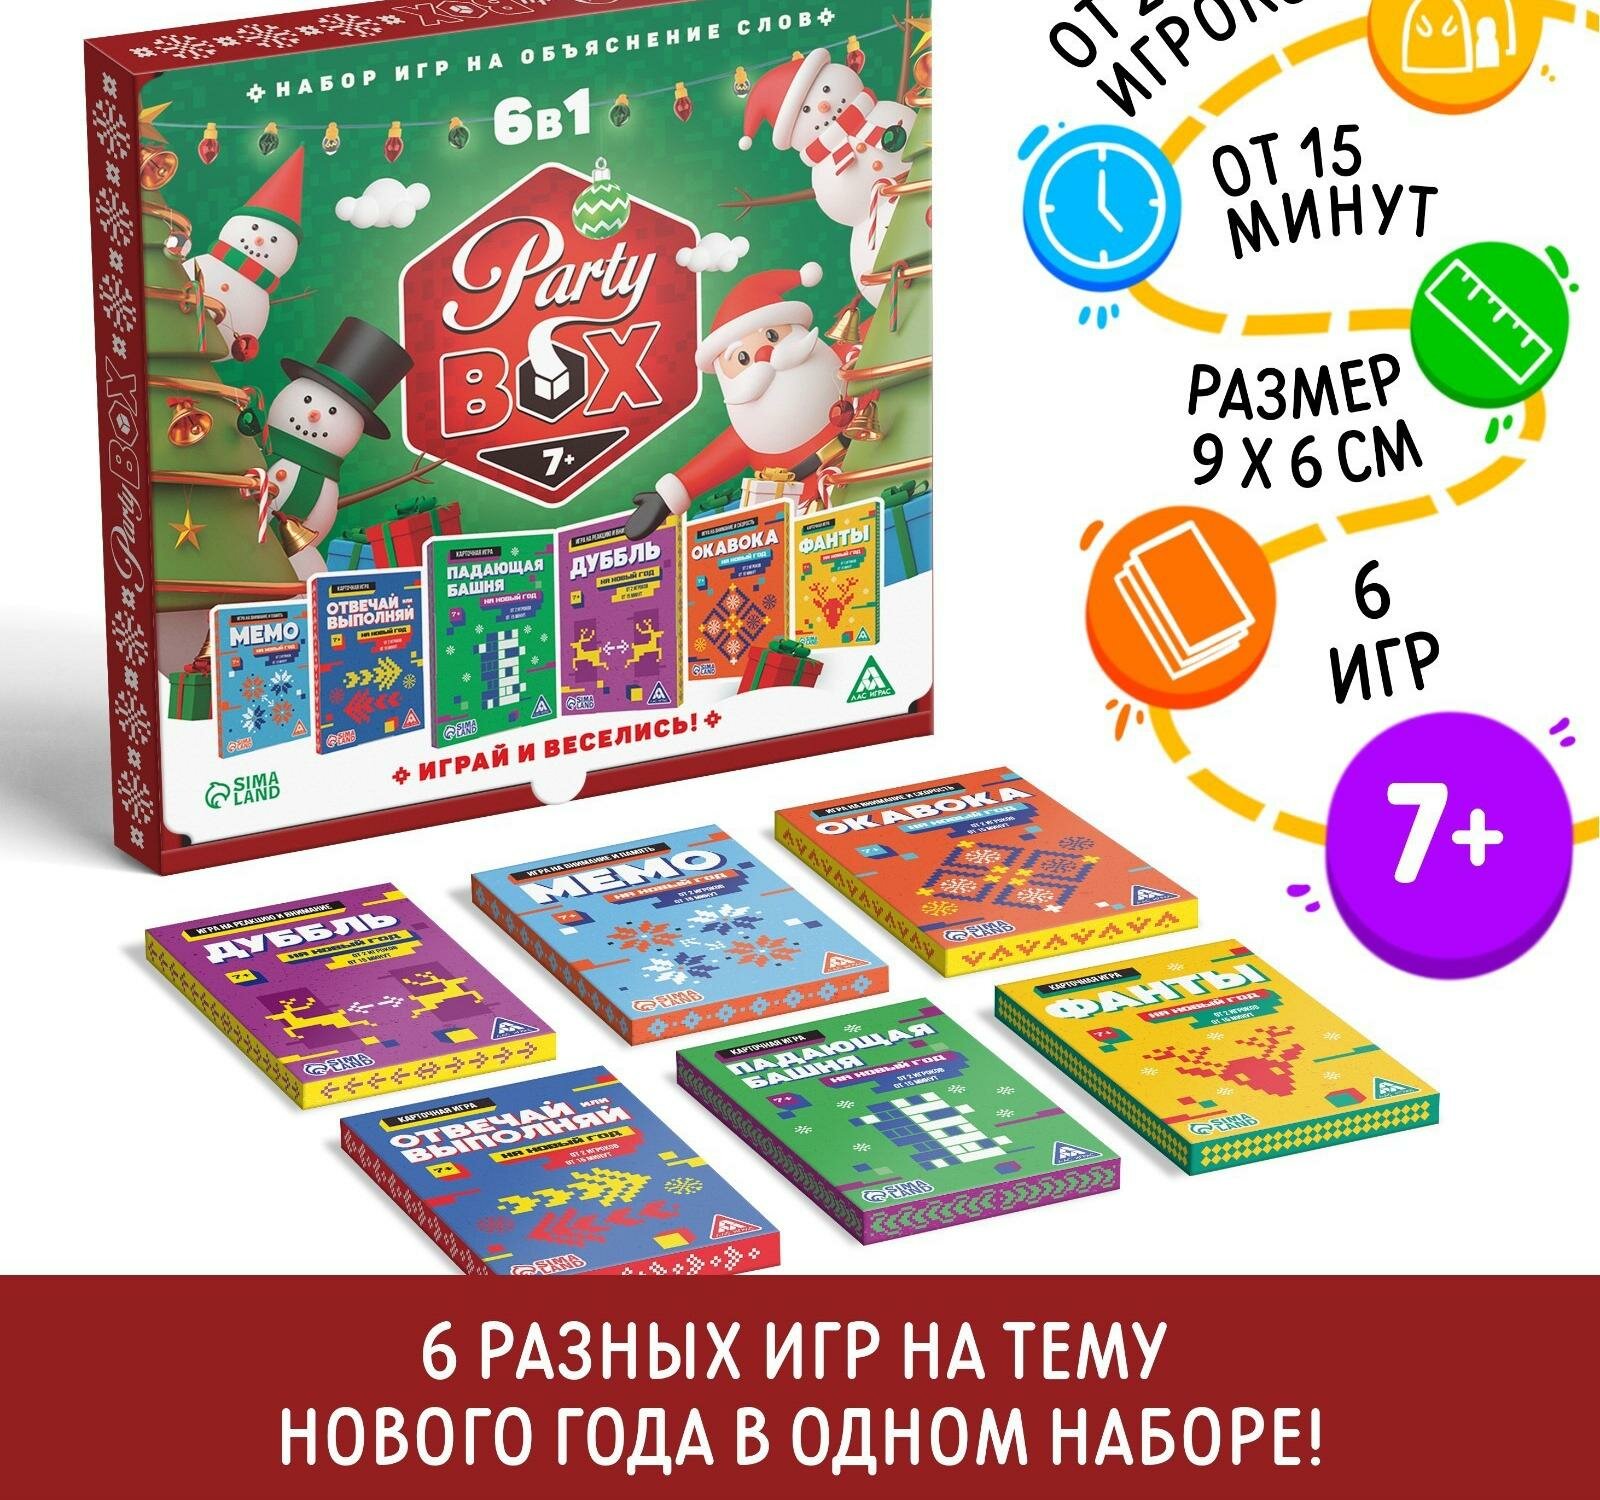 Новогодний набор игр "Новый год: Party box. Играй и веселись. 6 в 1", по 20 карт в каждой игре, 7+